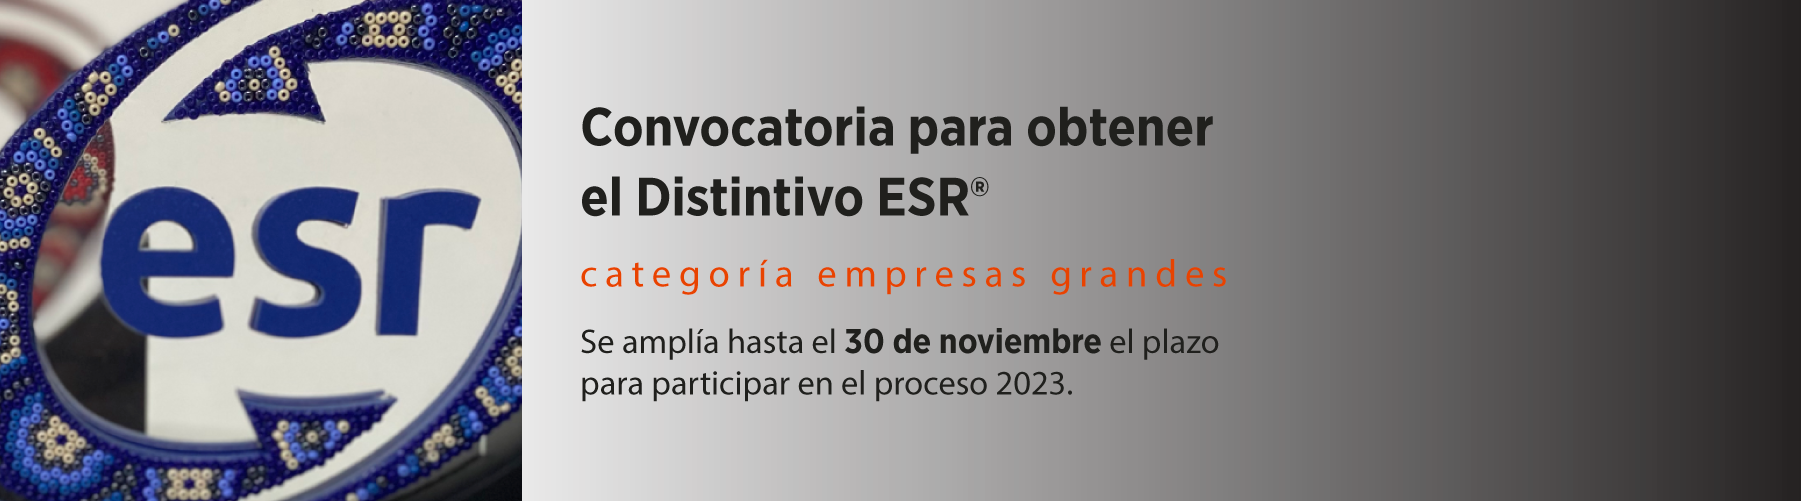 Convocatoria para obtener el Distintivo ESR® categoría empresas grandes Se amplía hasta el 30 de noviembre el plazo para participar en el proceso 2023.